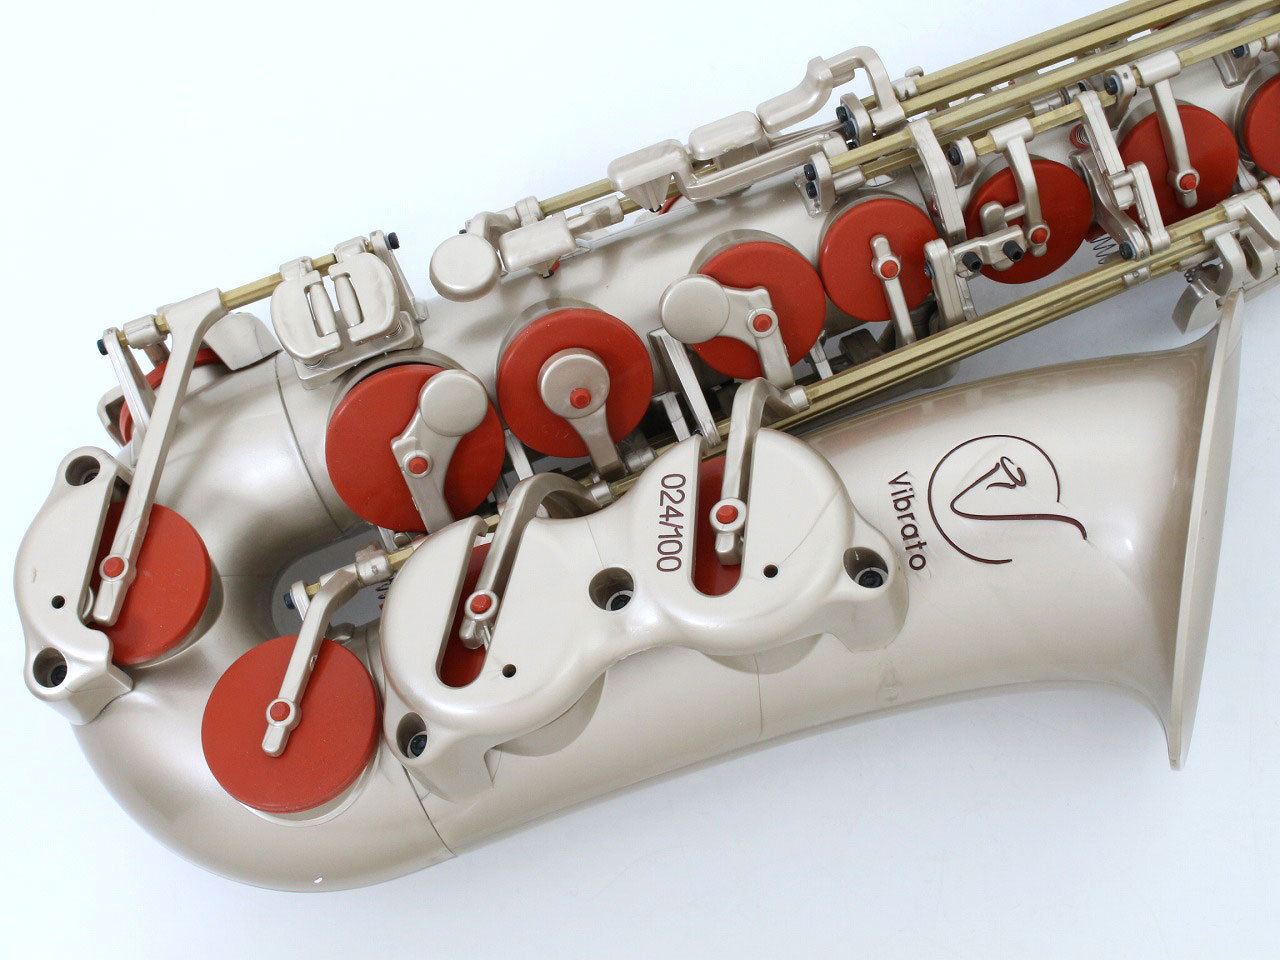 vibratoプラスチック製アルトサックス - 管楽器、笛、ハーモニカ